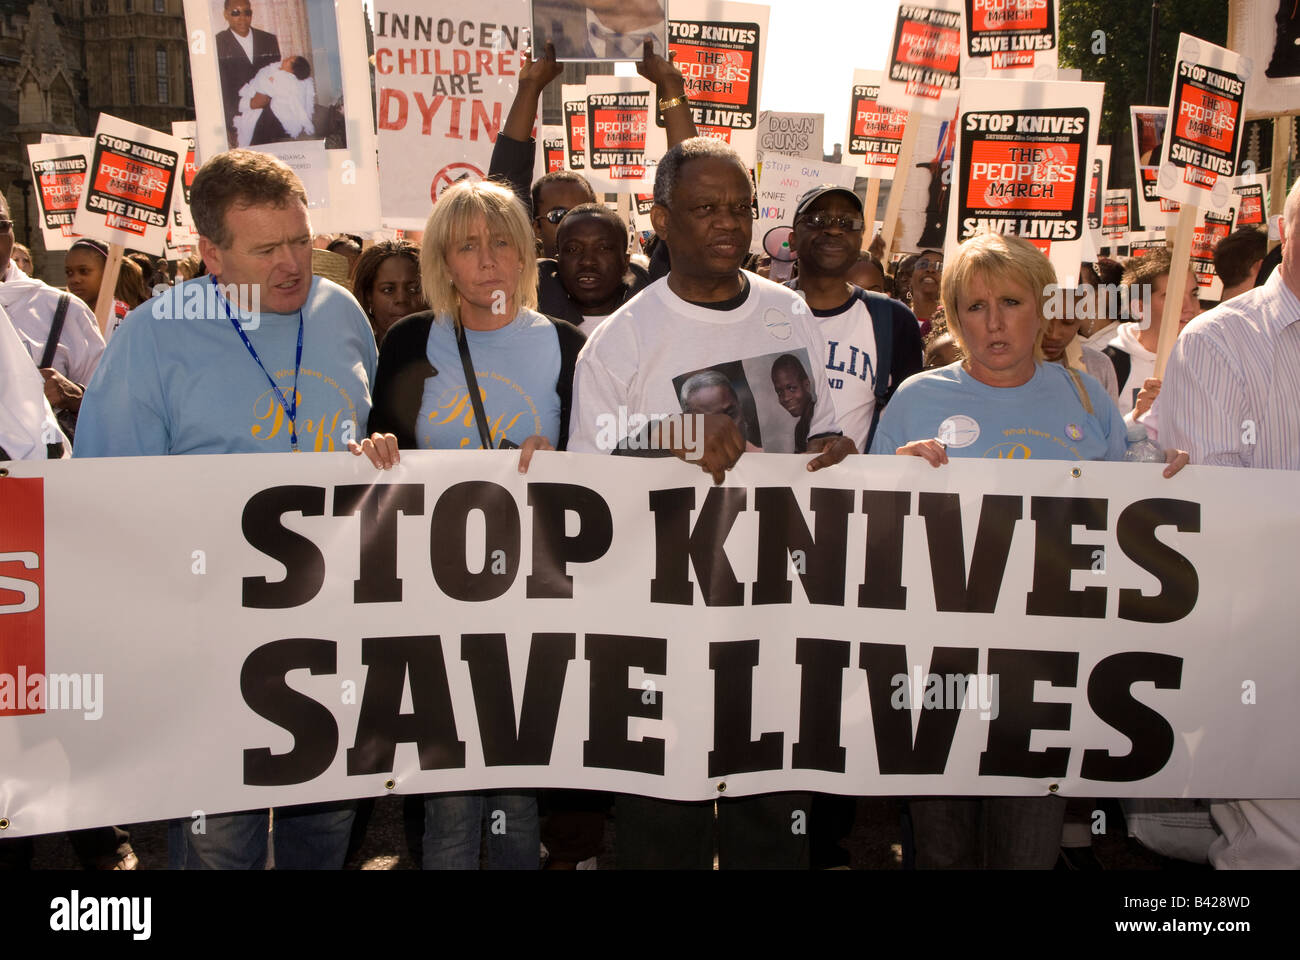 Damilola Taylors Vater am 20. September 2008, The People's March, London, Großbritannien. März und Demo gegen die Messer-Kriminalität-Epidemie. Stockfoto